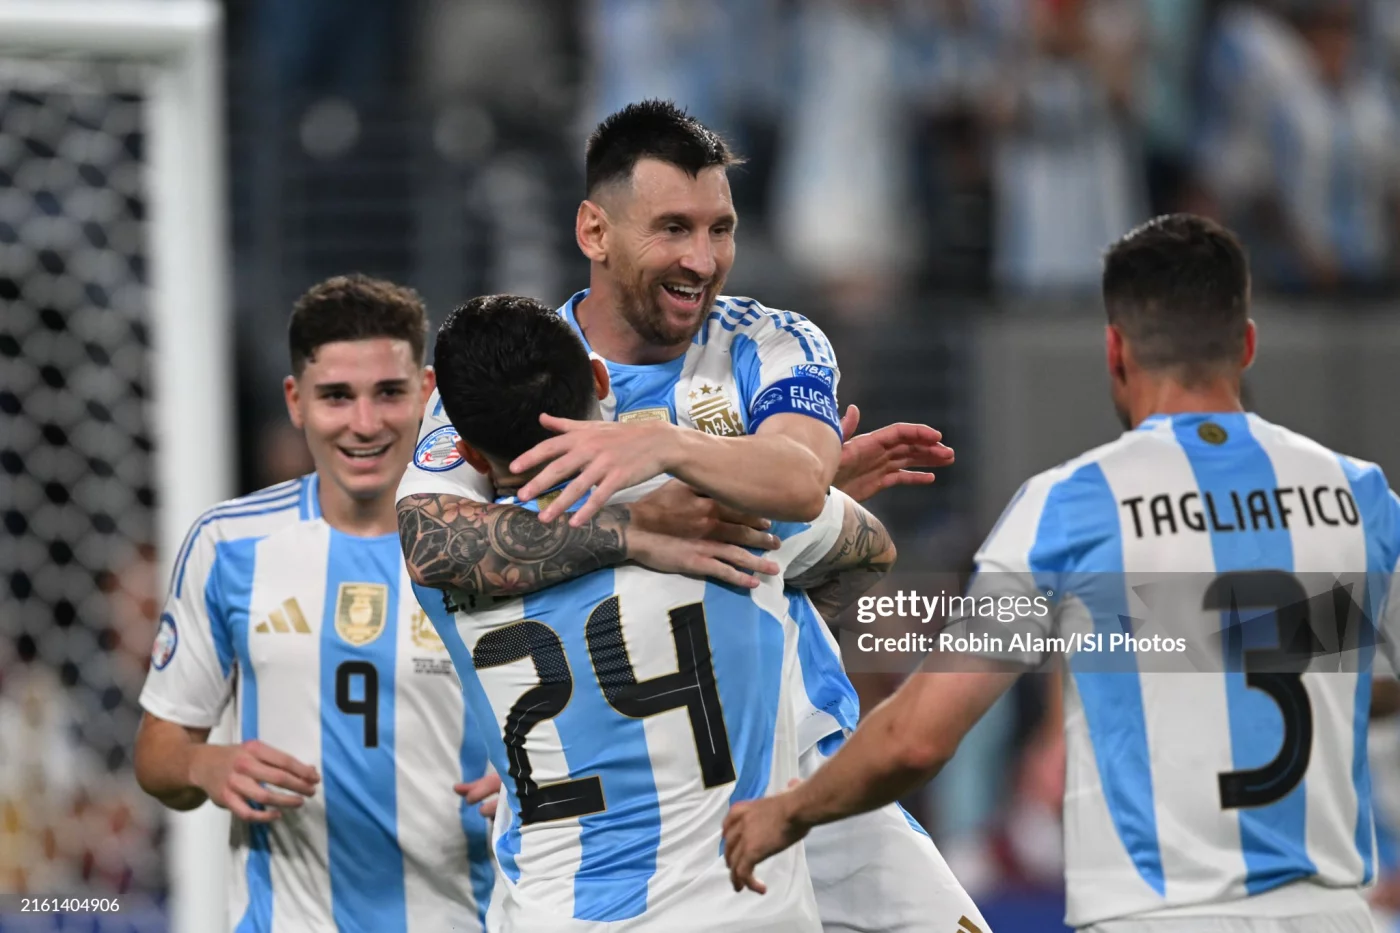 Kopa Amerika. Argentina finalda Kolumbiyani mag‘lub etib bosh sovrinni qo‘lga kiritdi